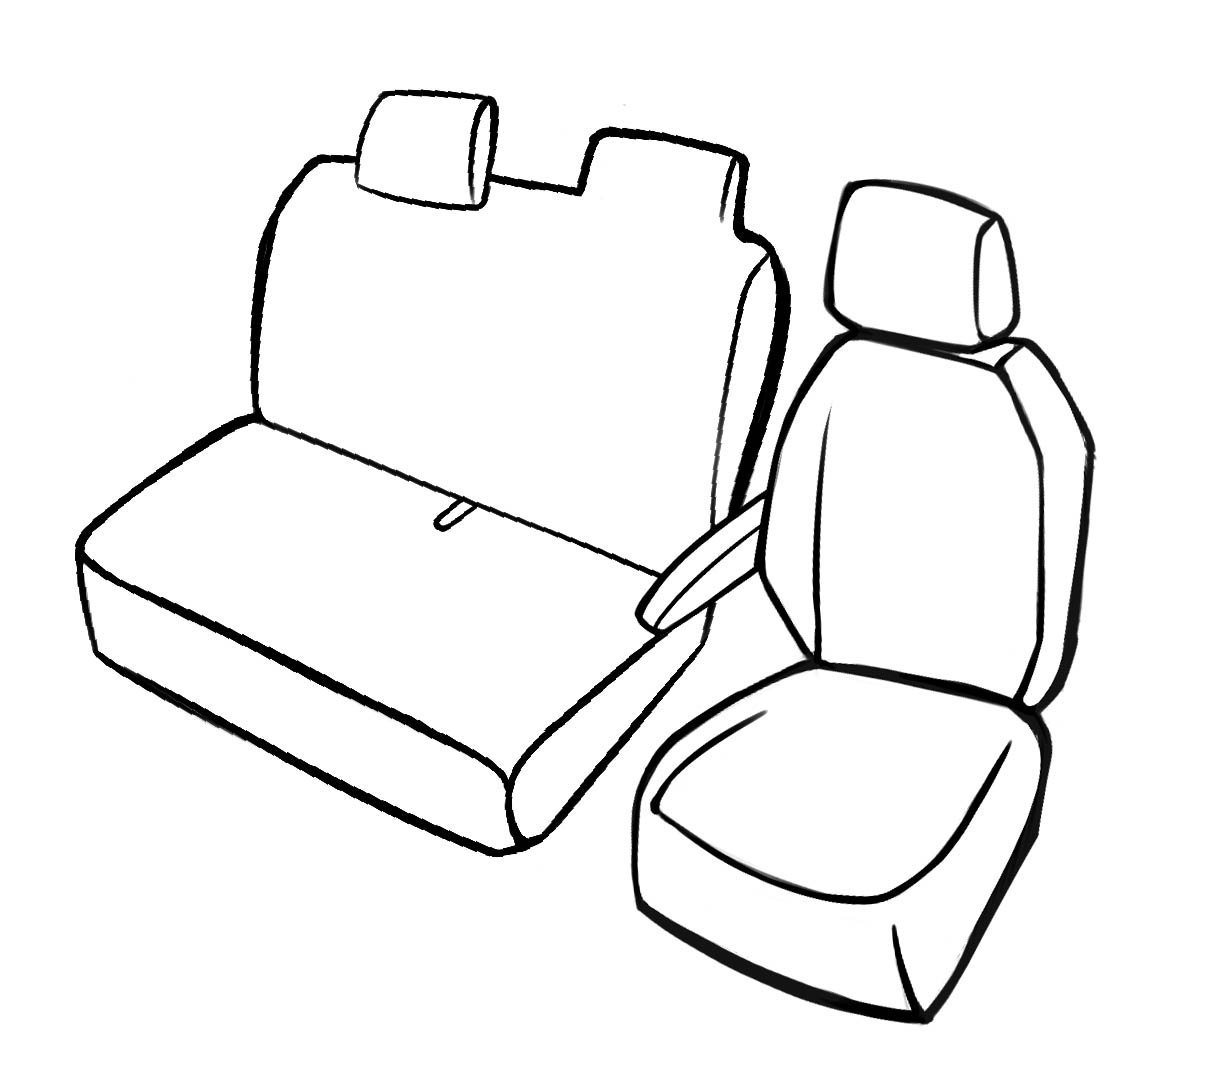 Passform Premium Sitzbezug für VW Crafter 04/2006-12/2016, 1 Einzelsitzbezug vorne + Armlehnenbezug, 1 Doppelbankbezug